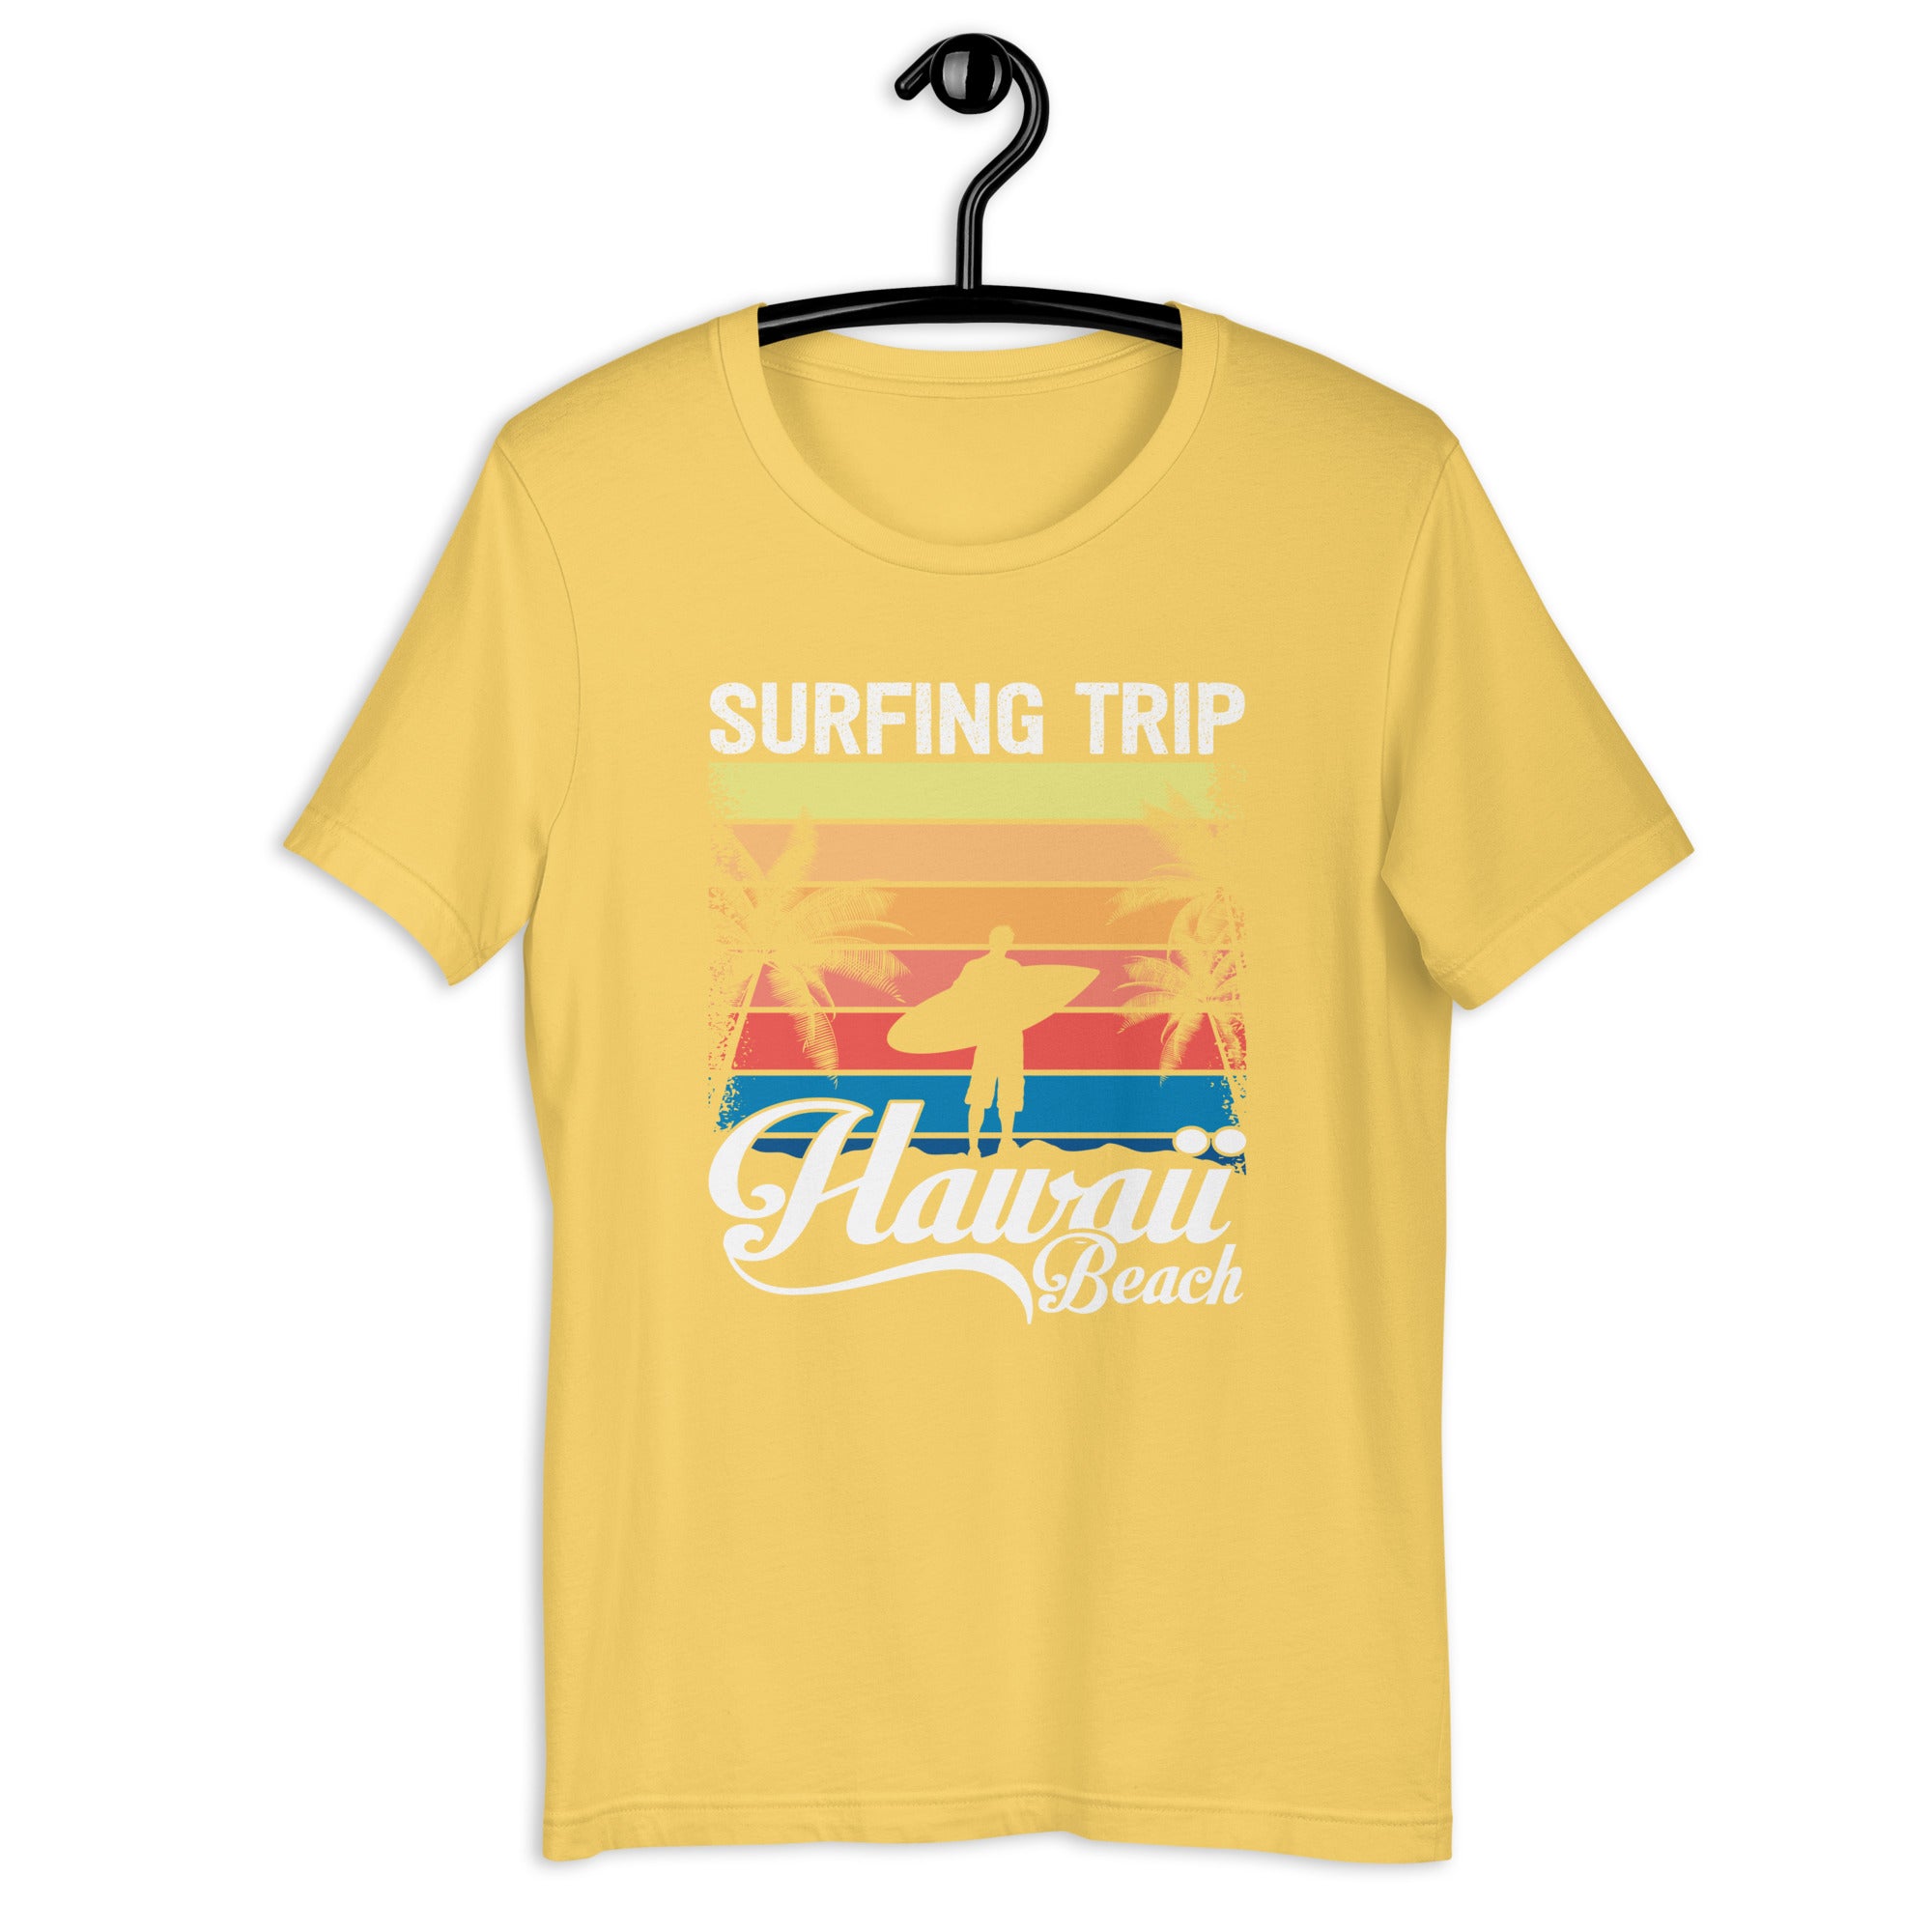 Hawaii Beach Surfing T-Shirt